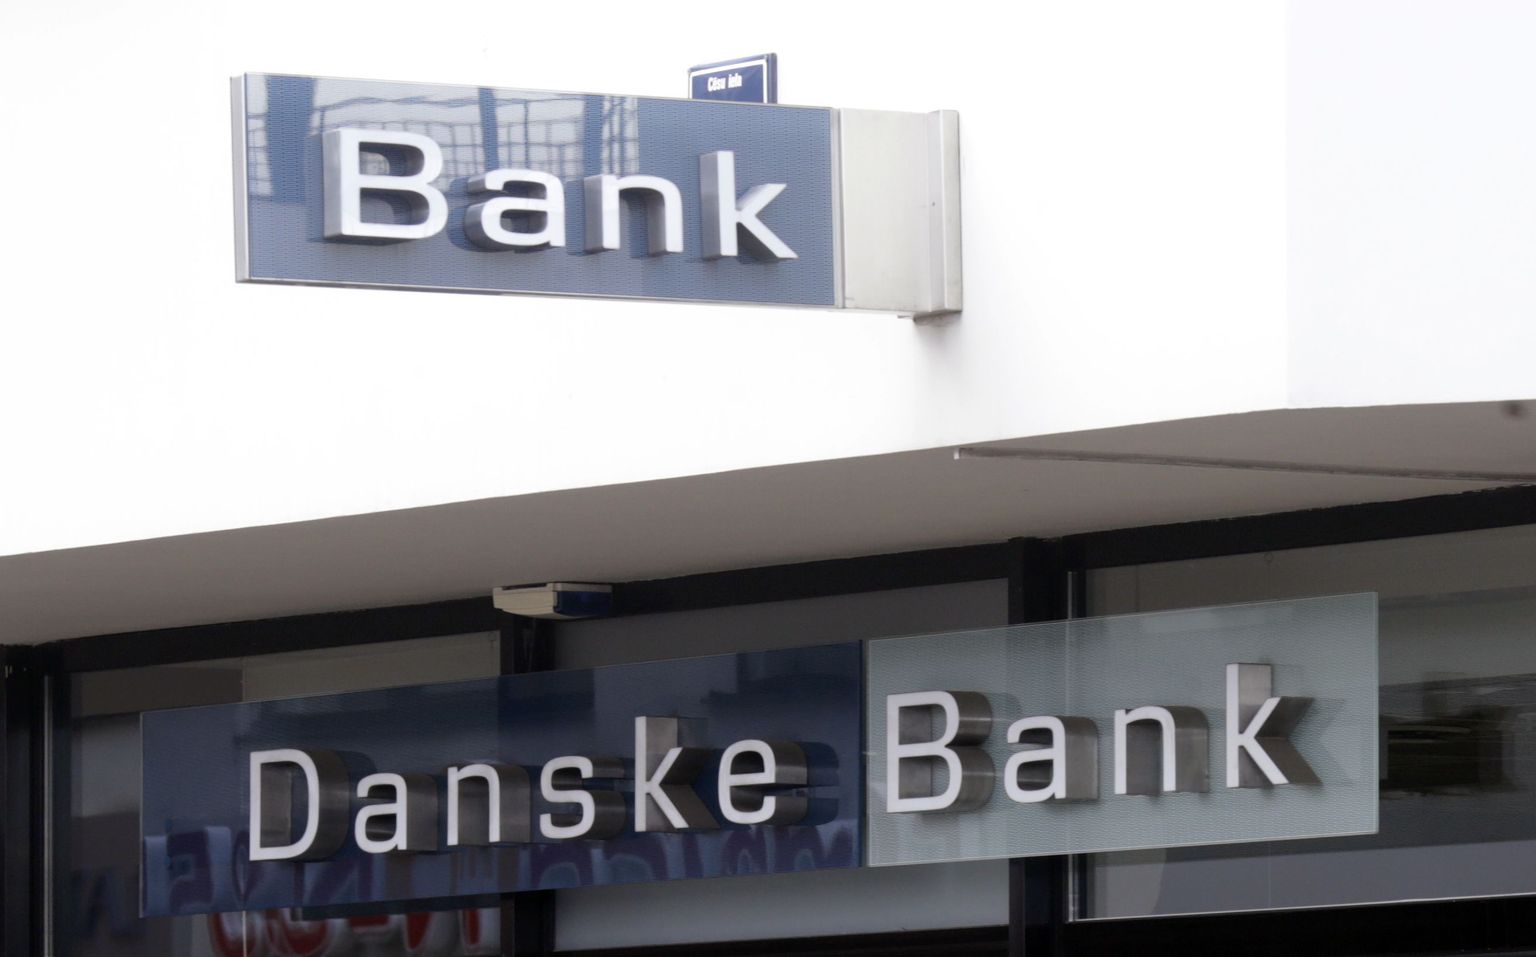 Danske Banki logo.